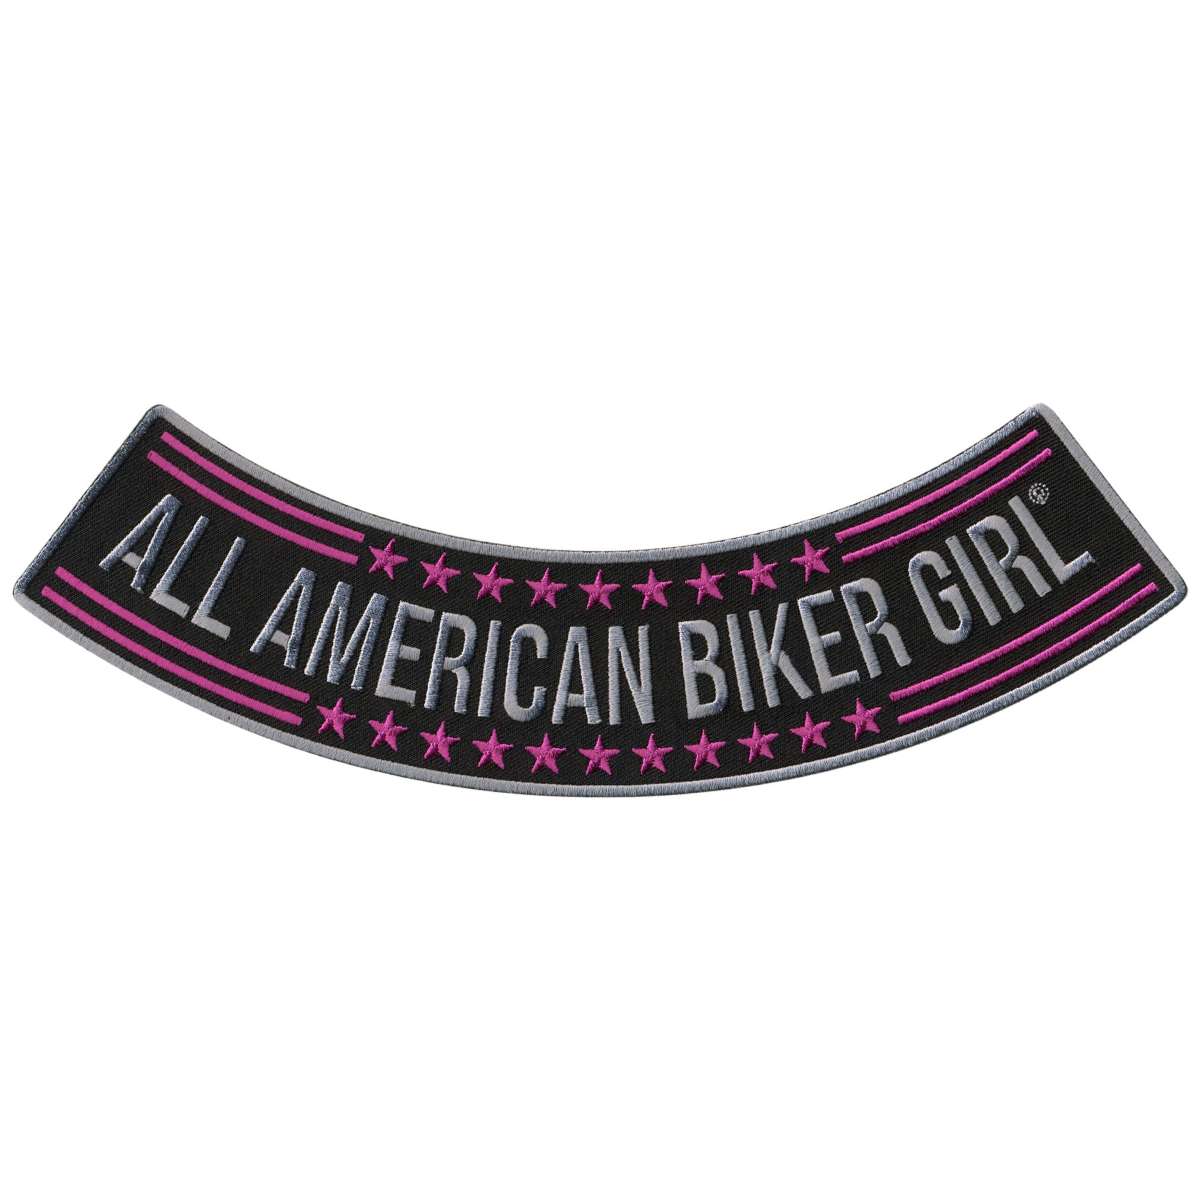 Hot Leathers All American Biker Girl 10” X 2” Bottom Rocker Patch PPM5103